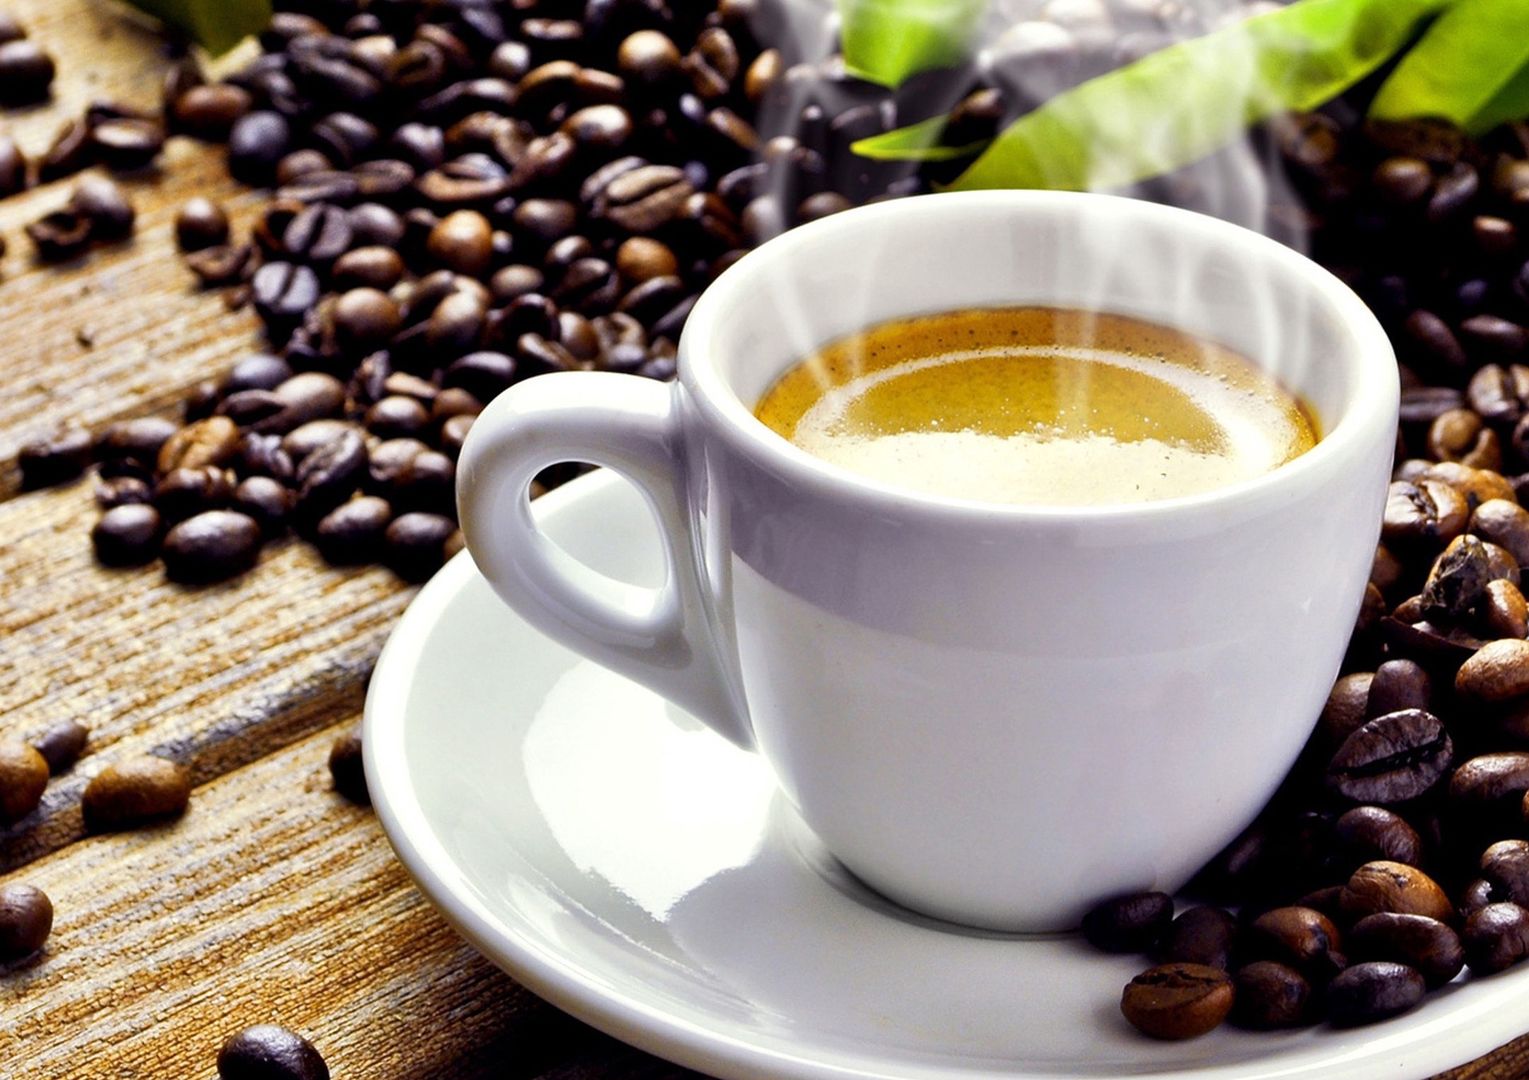 Picie kawy chroni wątrobę. Wiadomo, która kawa jest najzdrowsza